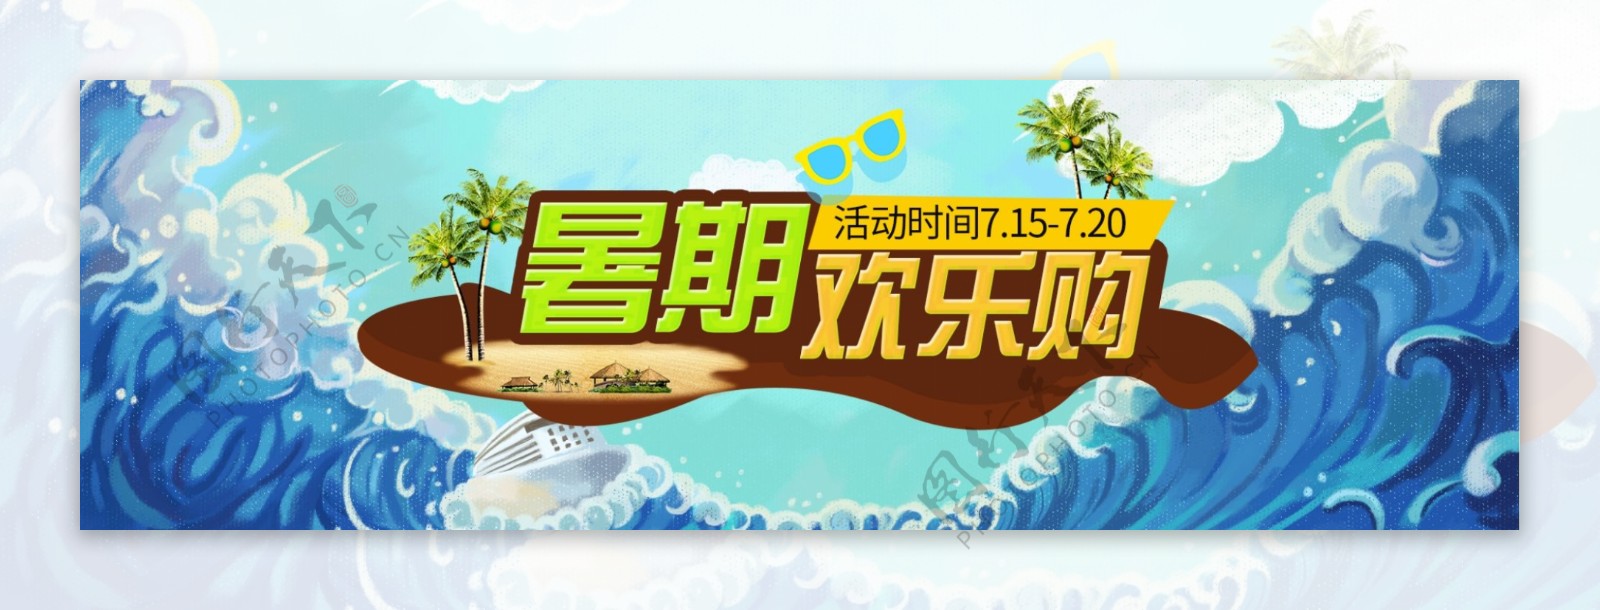 暑期狂欢购淘宝电商banner